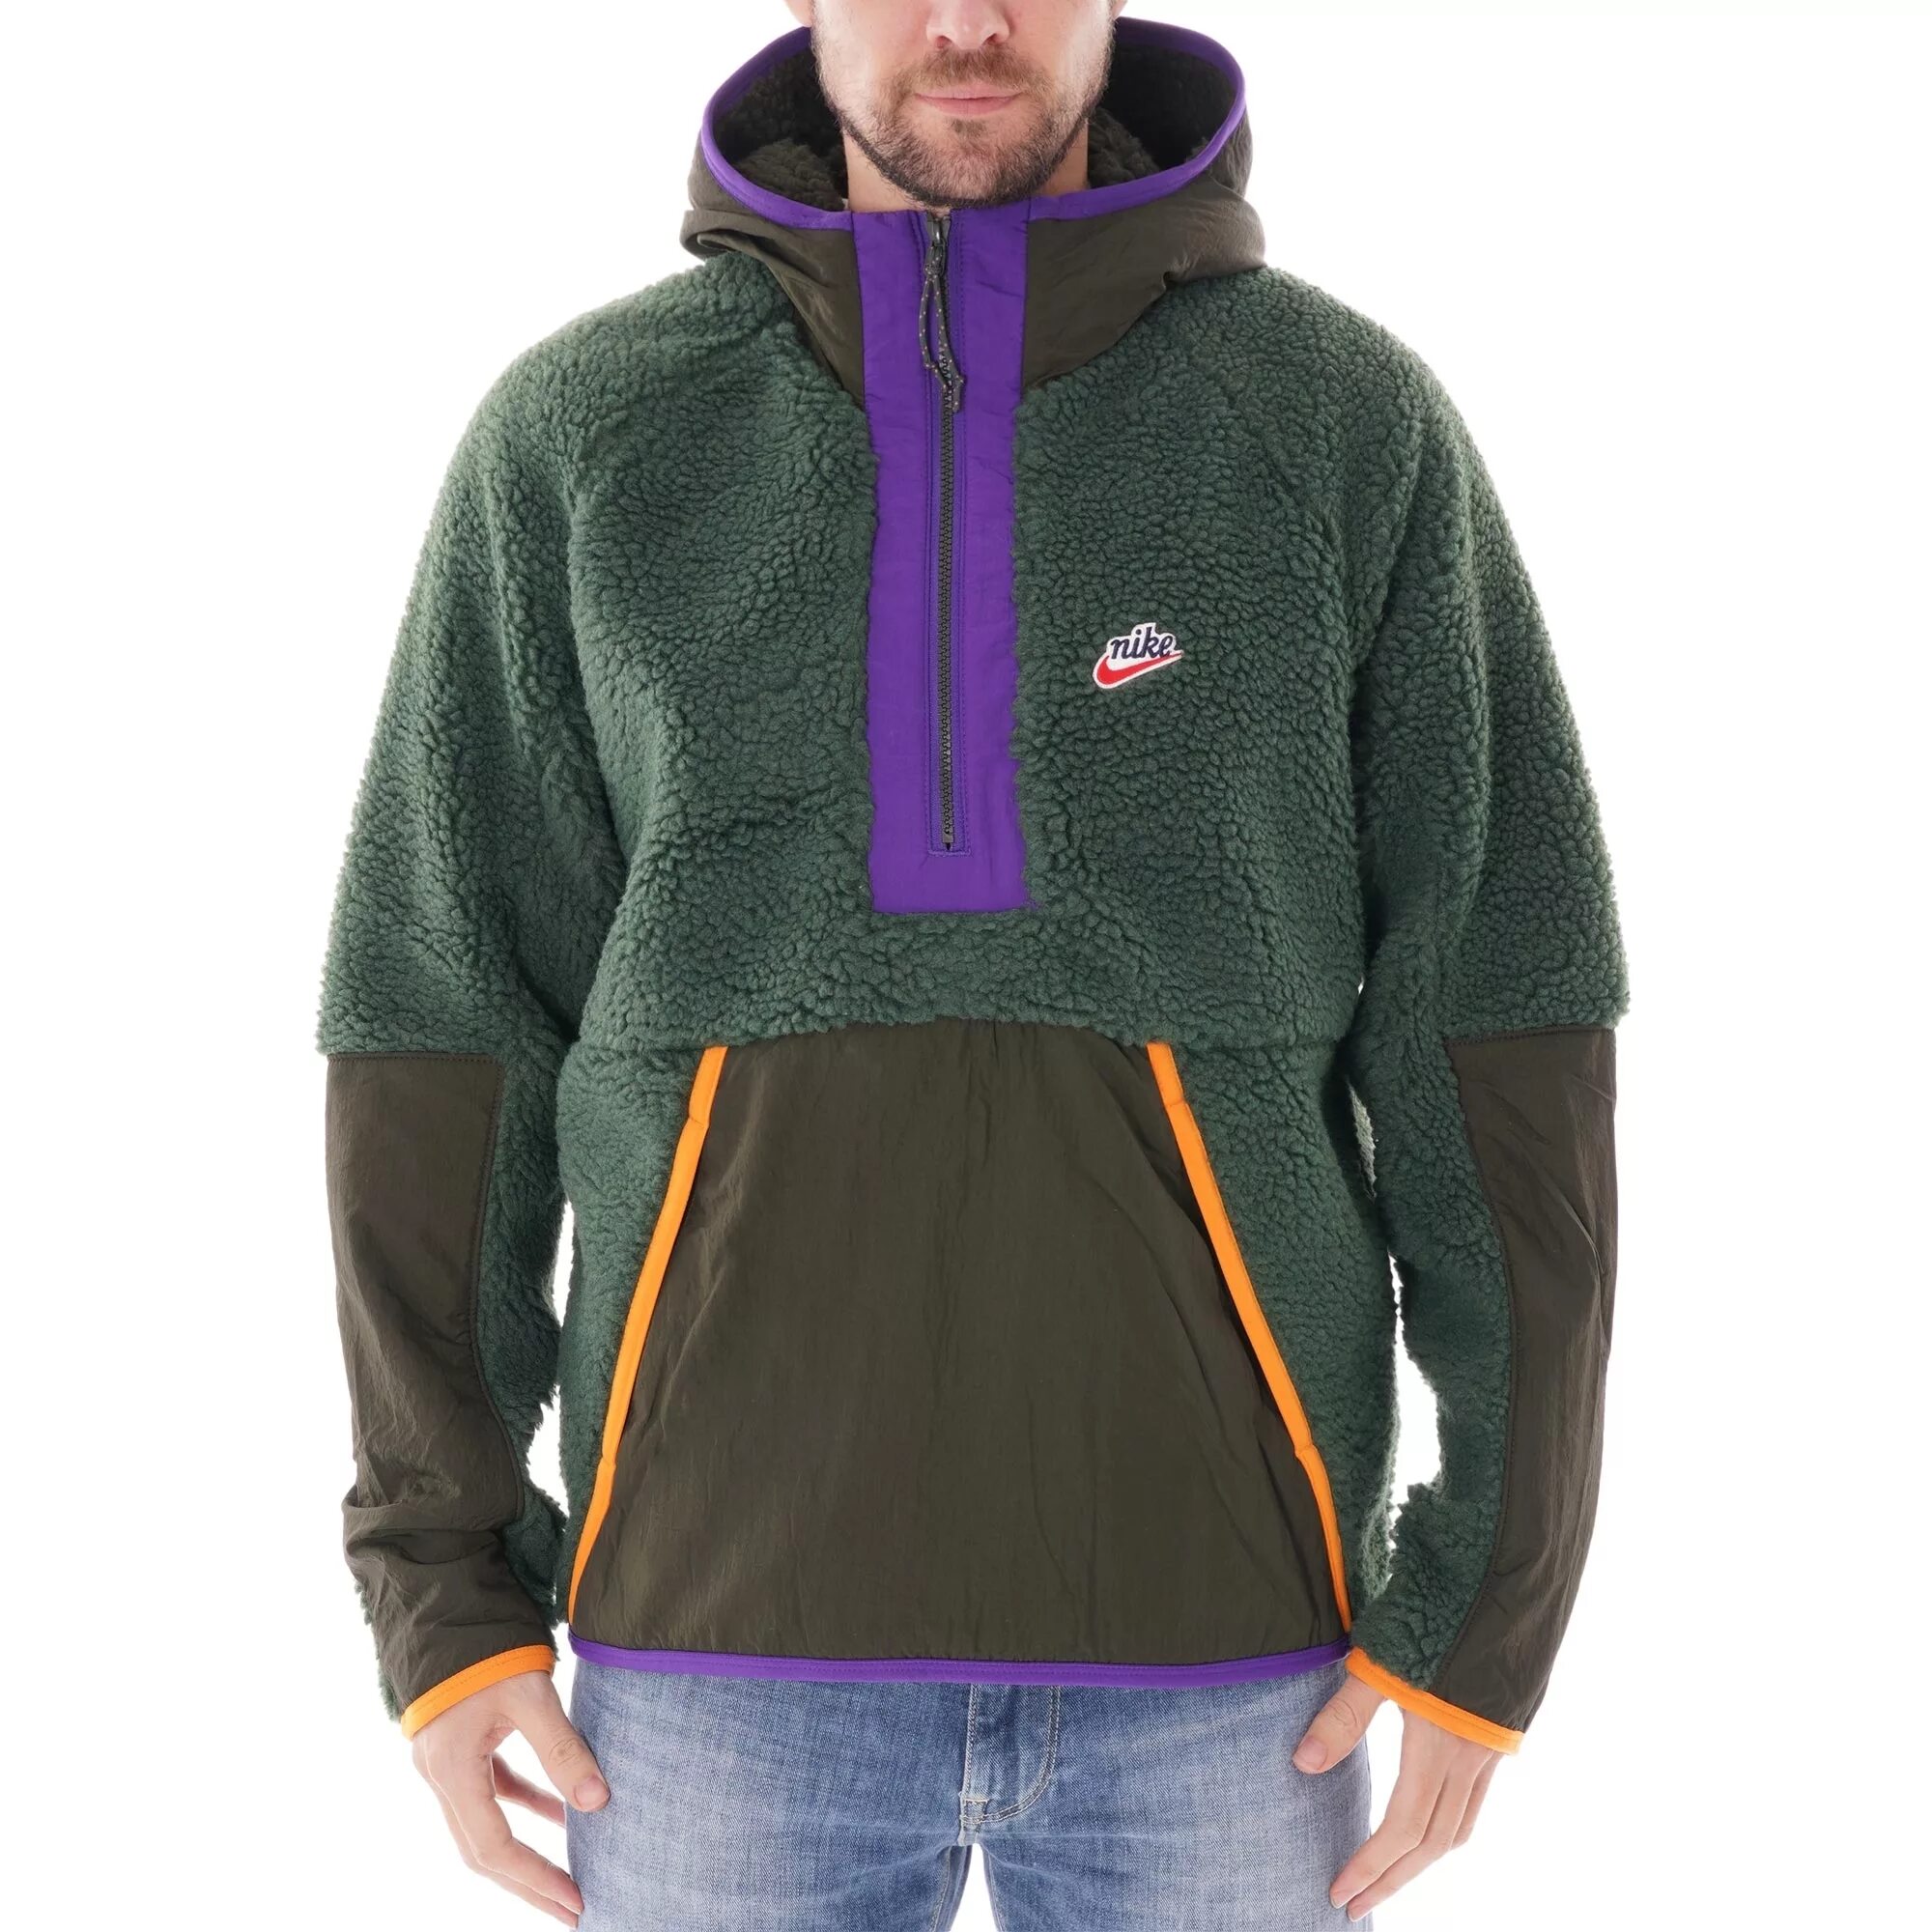 Nike Sherpa Fleece Jacket. Nike Hoodie half-zip Sherpa. Nike Hooded Jacket Sherpa. Худи шерпа Nike. Av bv c